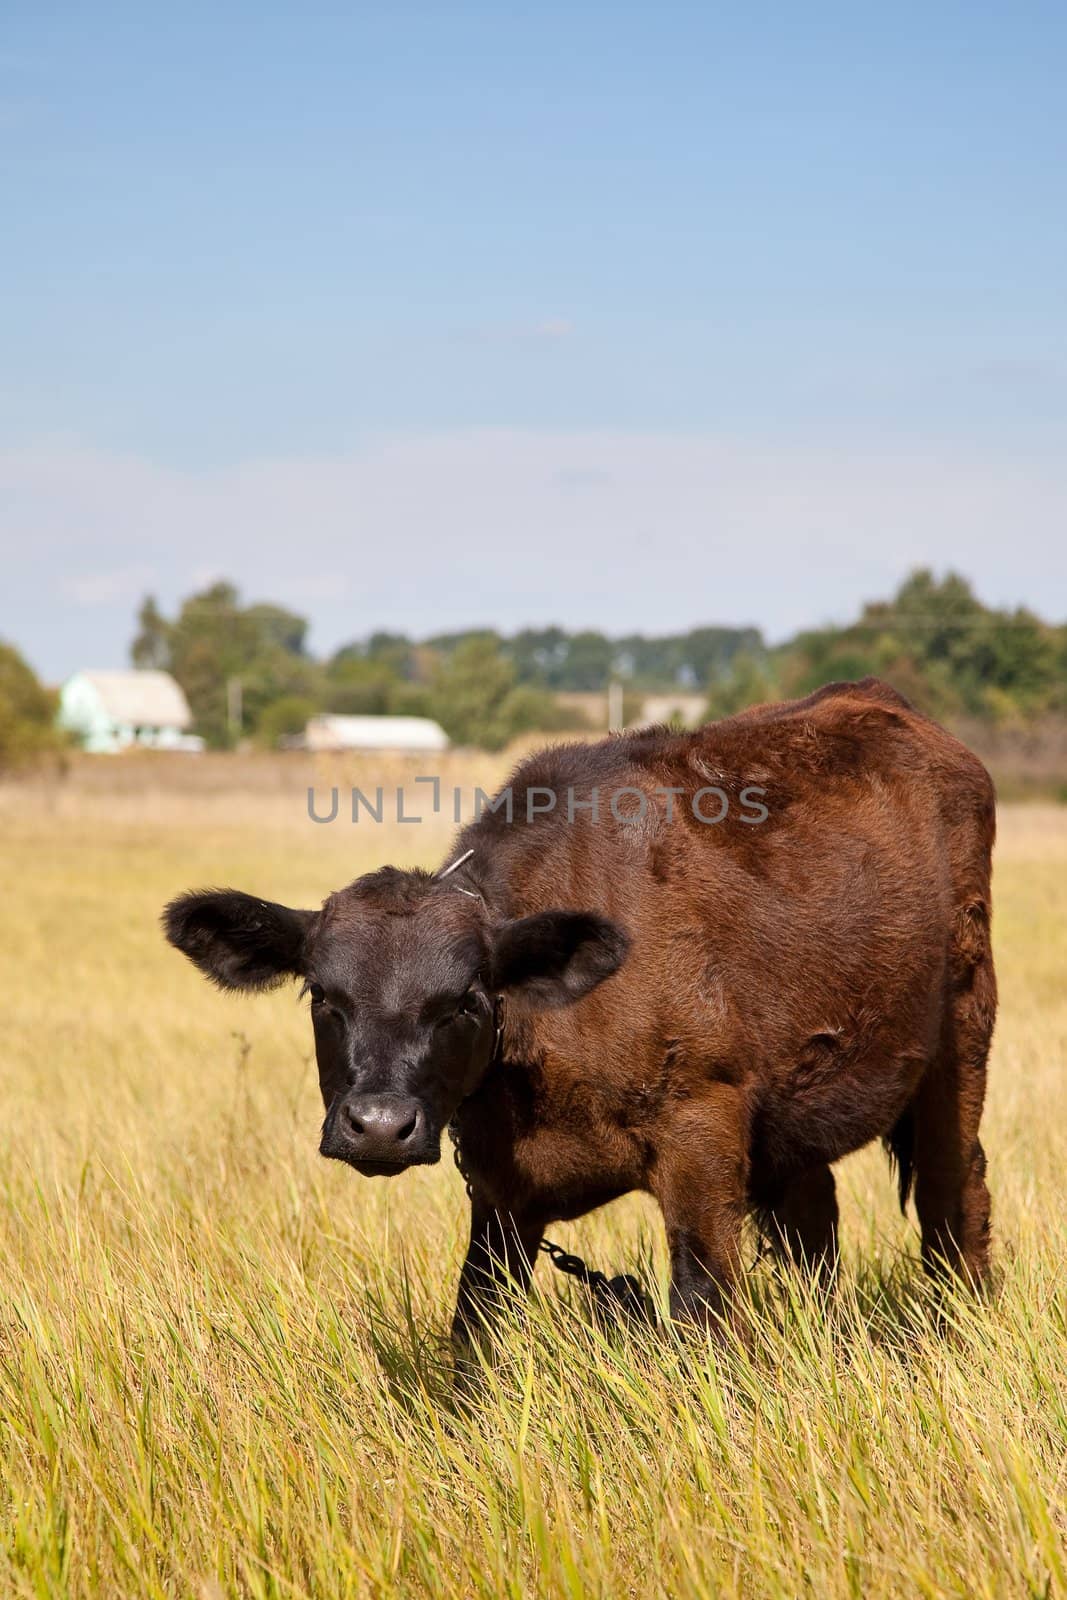 Cow on a green dandelion field, Blue sky